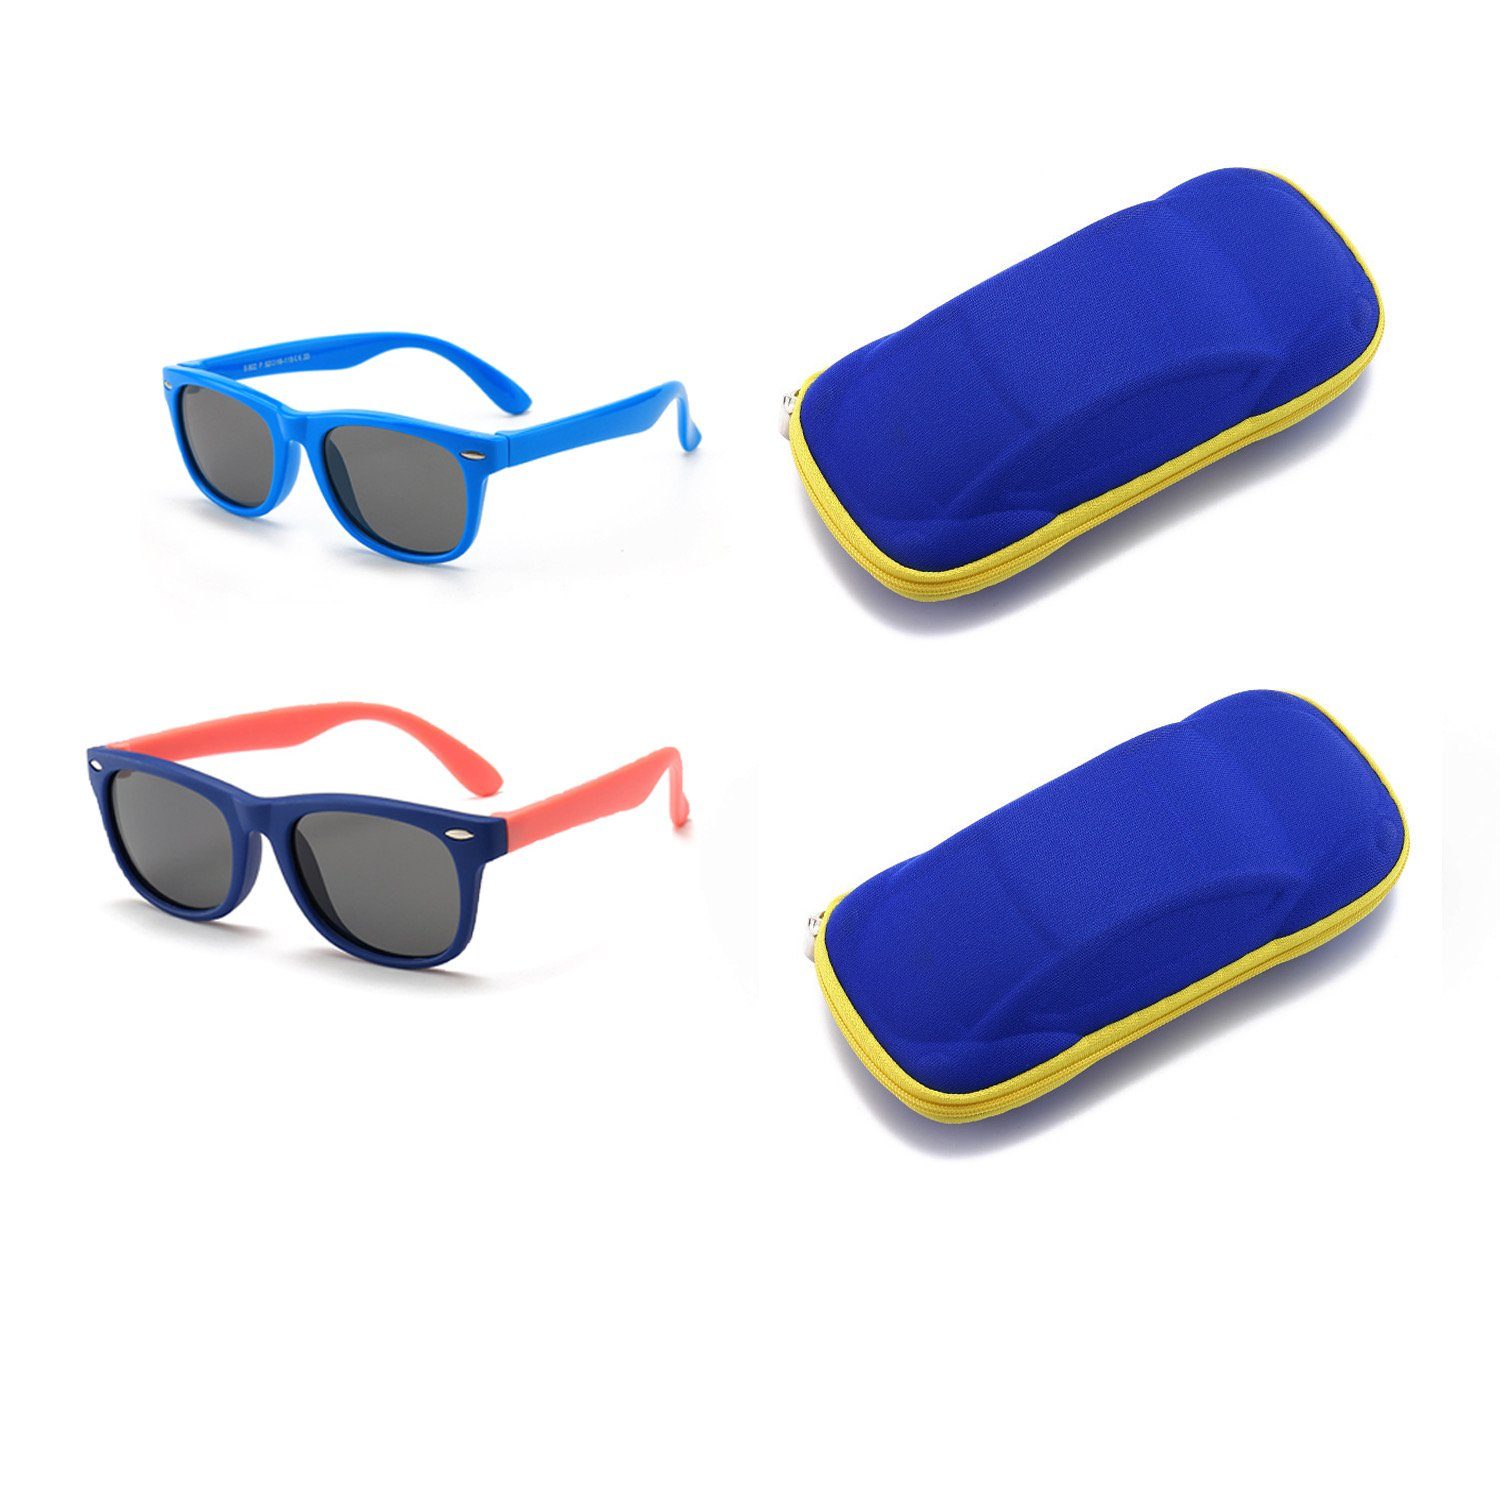 Olotos Sonnenbrille Sonnenbrille Gummi mit Brillenetui für 100% Schutz Mädchen Blau+Dunkelblau UV400 Brille Kinder Jungen